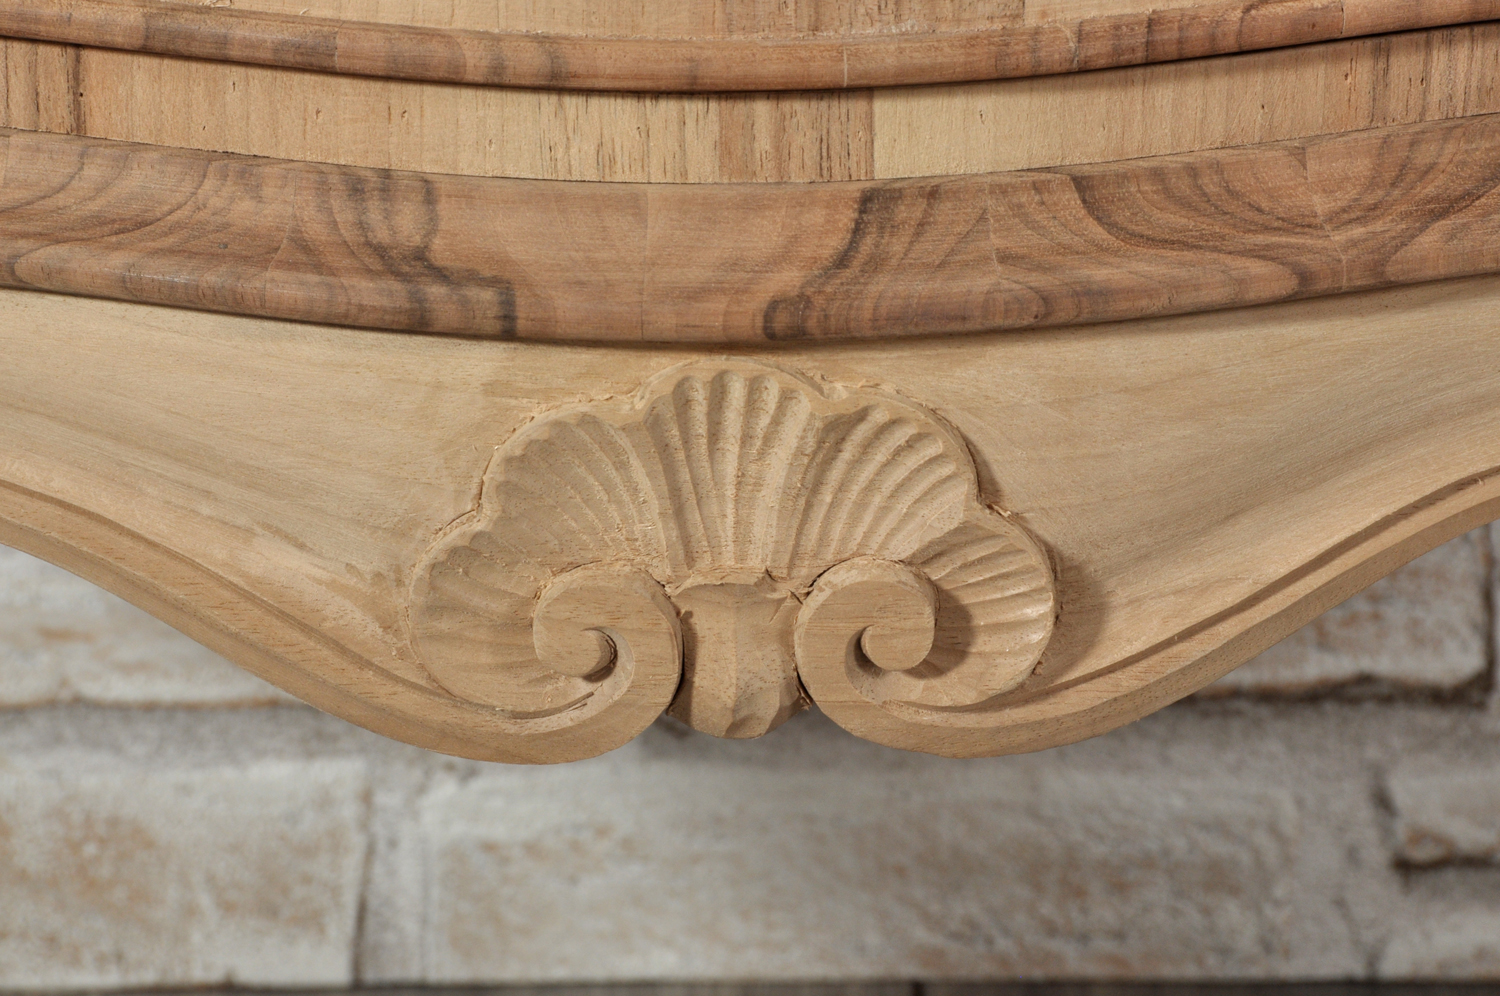 mobiletto comodino veneziano intarsiato e sagomato a urna calice importante manufatto costruito dal originale del settecento in essenze rare e pregiate di radica di noce e legno di rosa